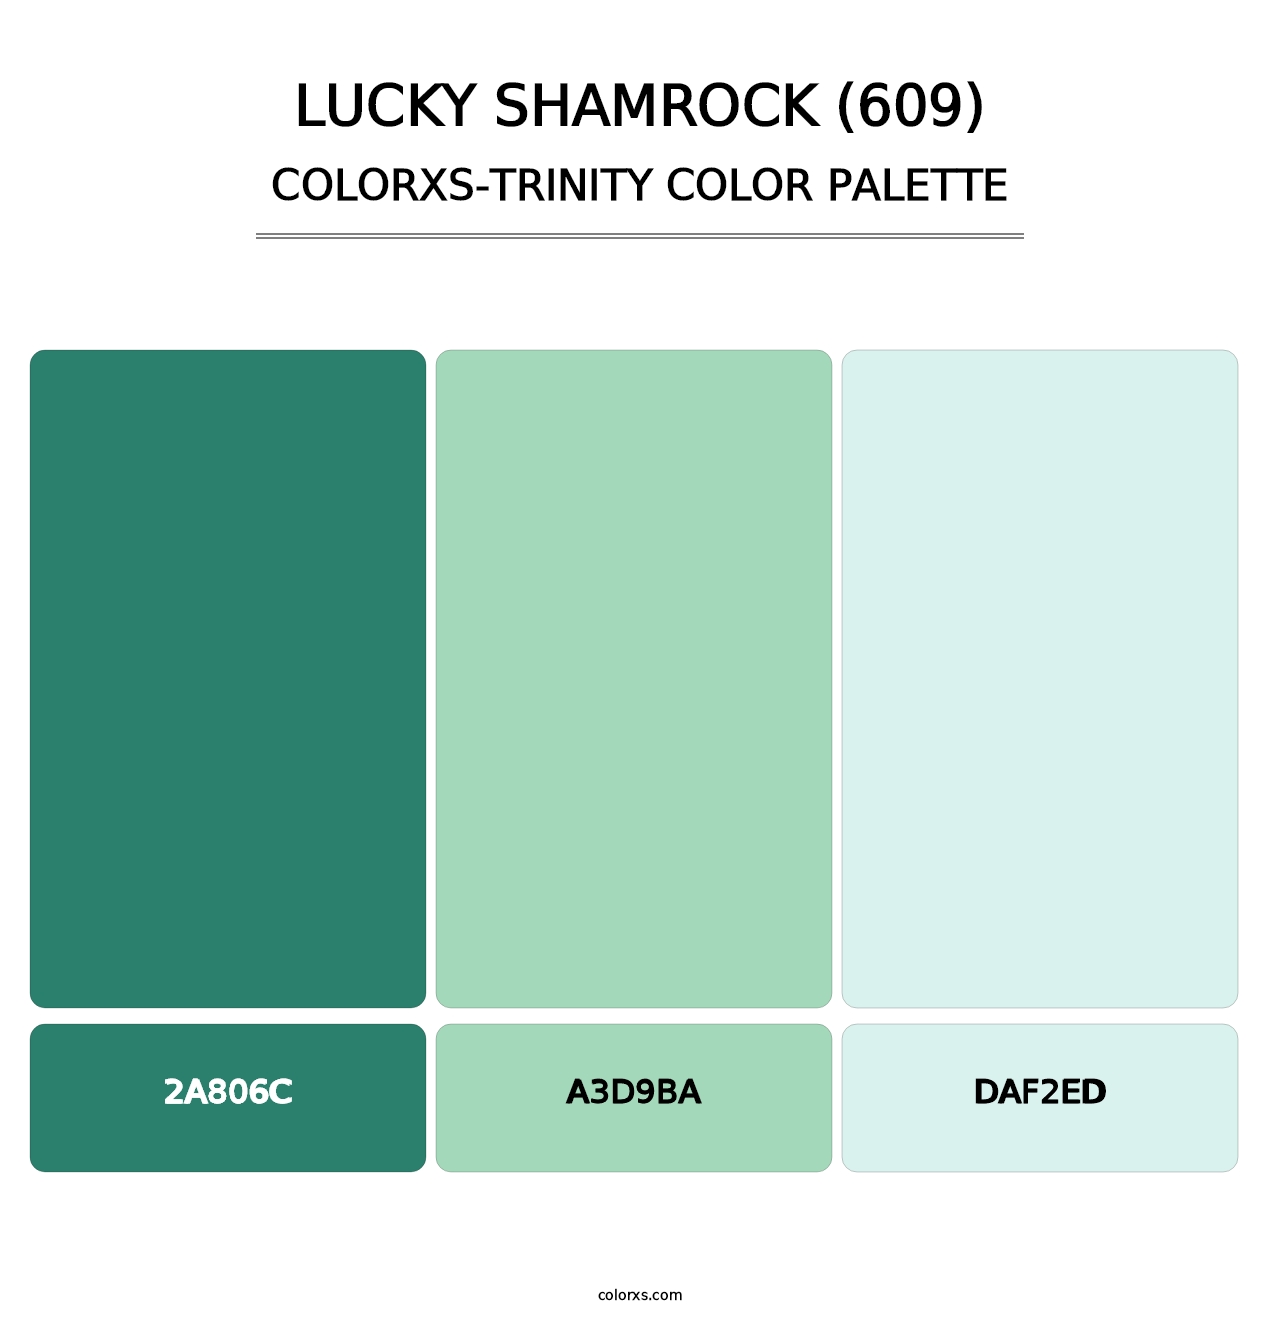 Lucky Shamrock (609) - Colorxs Trinity Palette